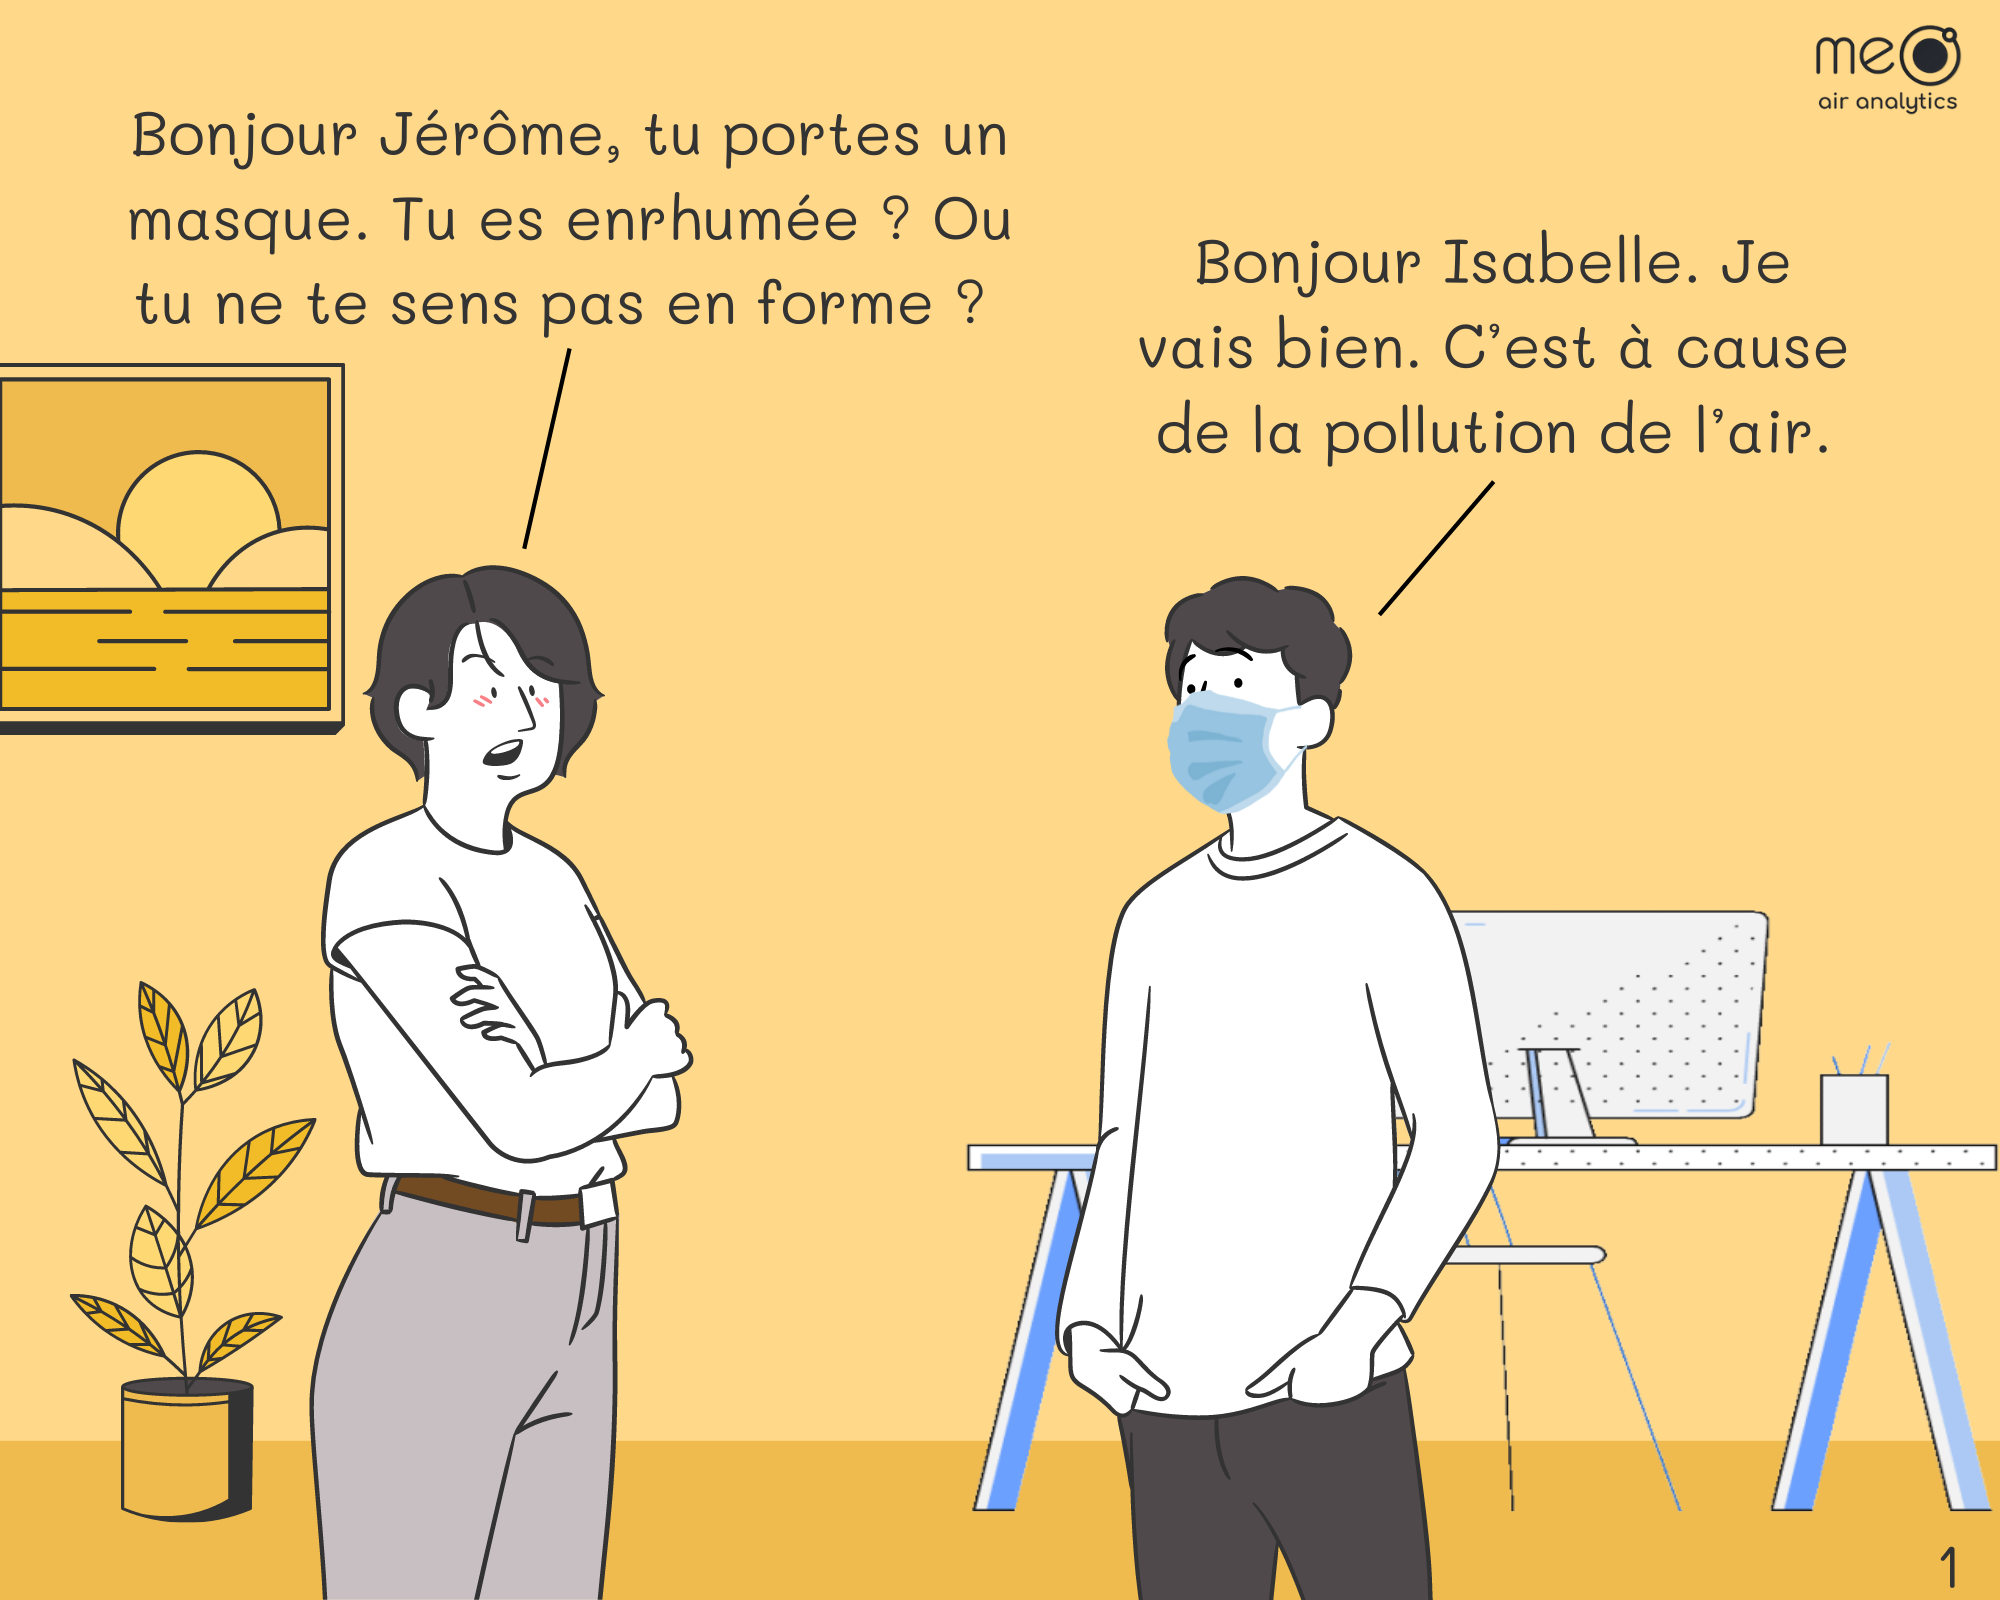 Isabelle : Bonjour Jérôme, tu portes un masque. Tu es enrhumée ? Ou tu ne te sens pas en forme ? Jérôme : Bonjour Isabelle. Je vais bien. C’est à cause de la pollution de l’air.